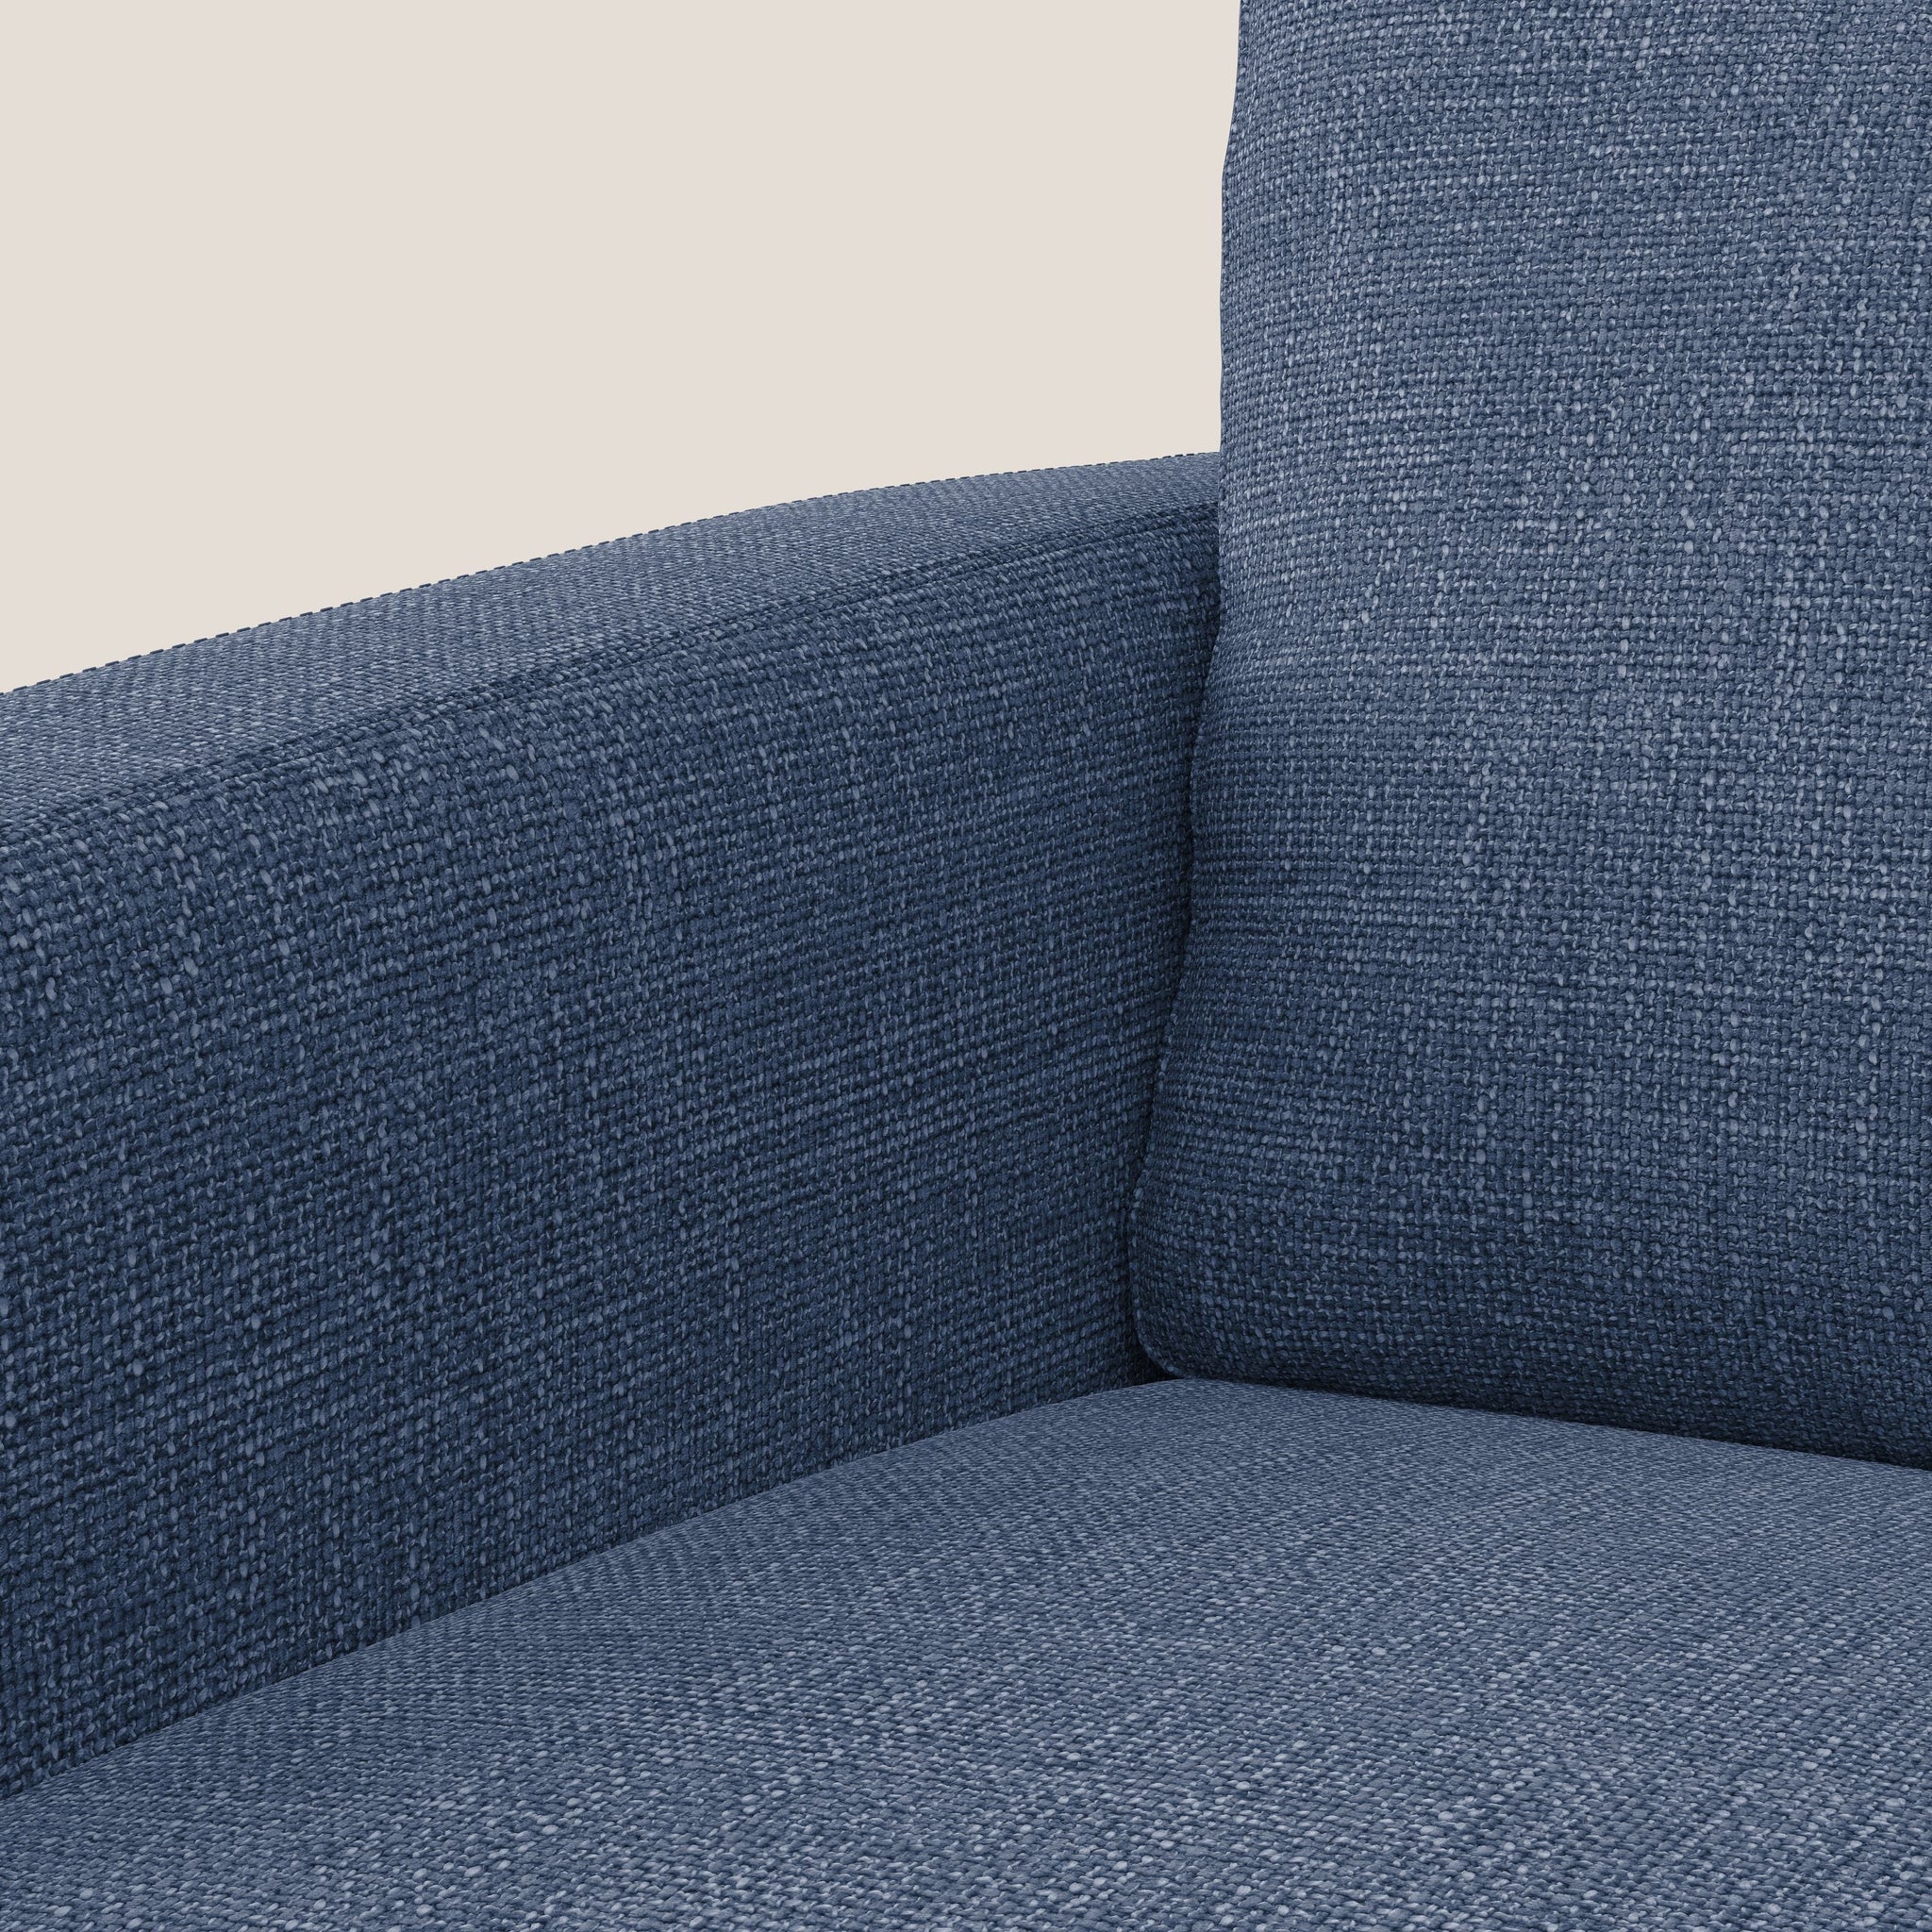 Orione fauteuil en tissu doux imperméable entrelacé T06